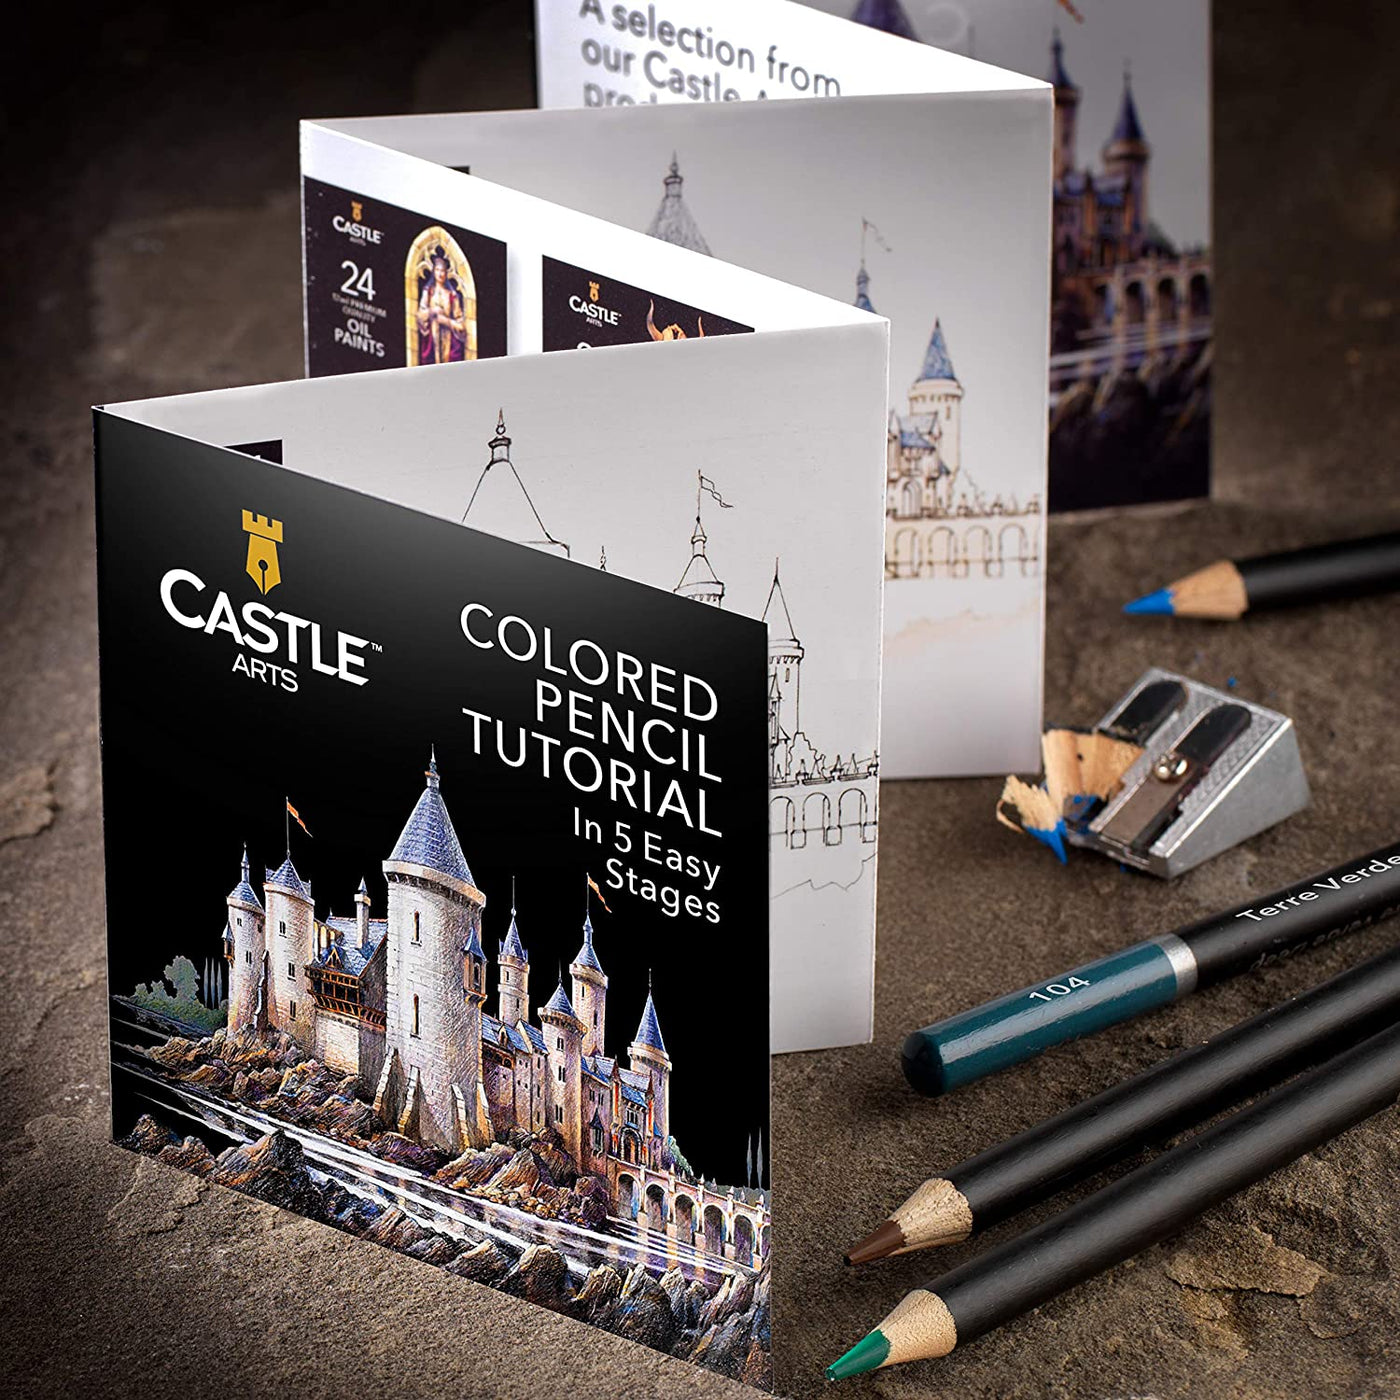 Castle Art Supplies 120 Colored Pencils Set 